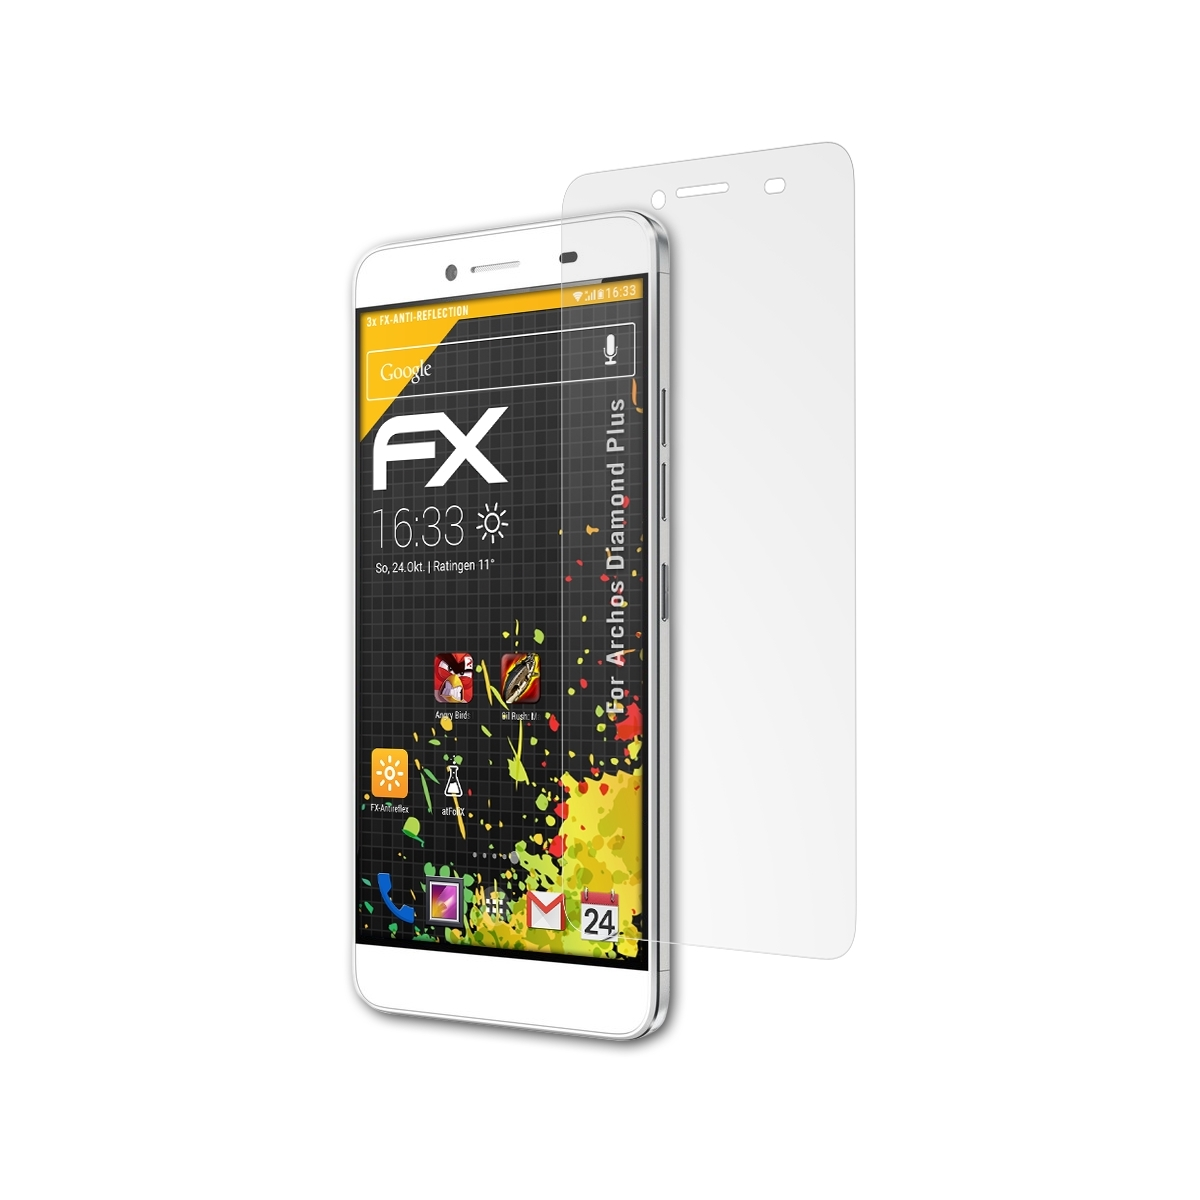 ATFOLIX 3x FX-Antireflex Diamond Archos Plus) Displayschutz(für